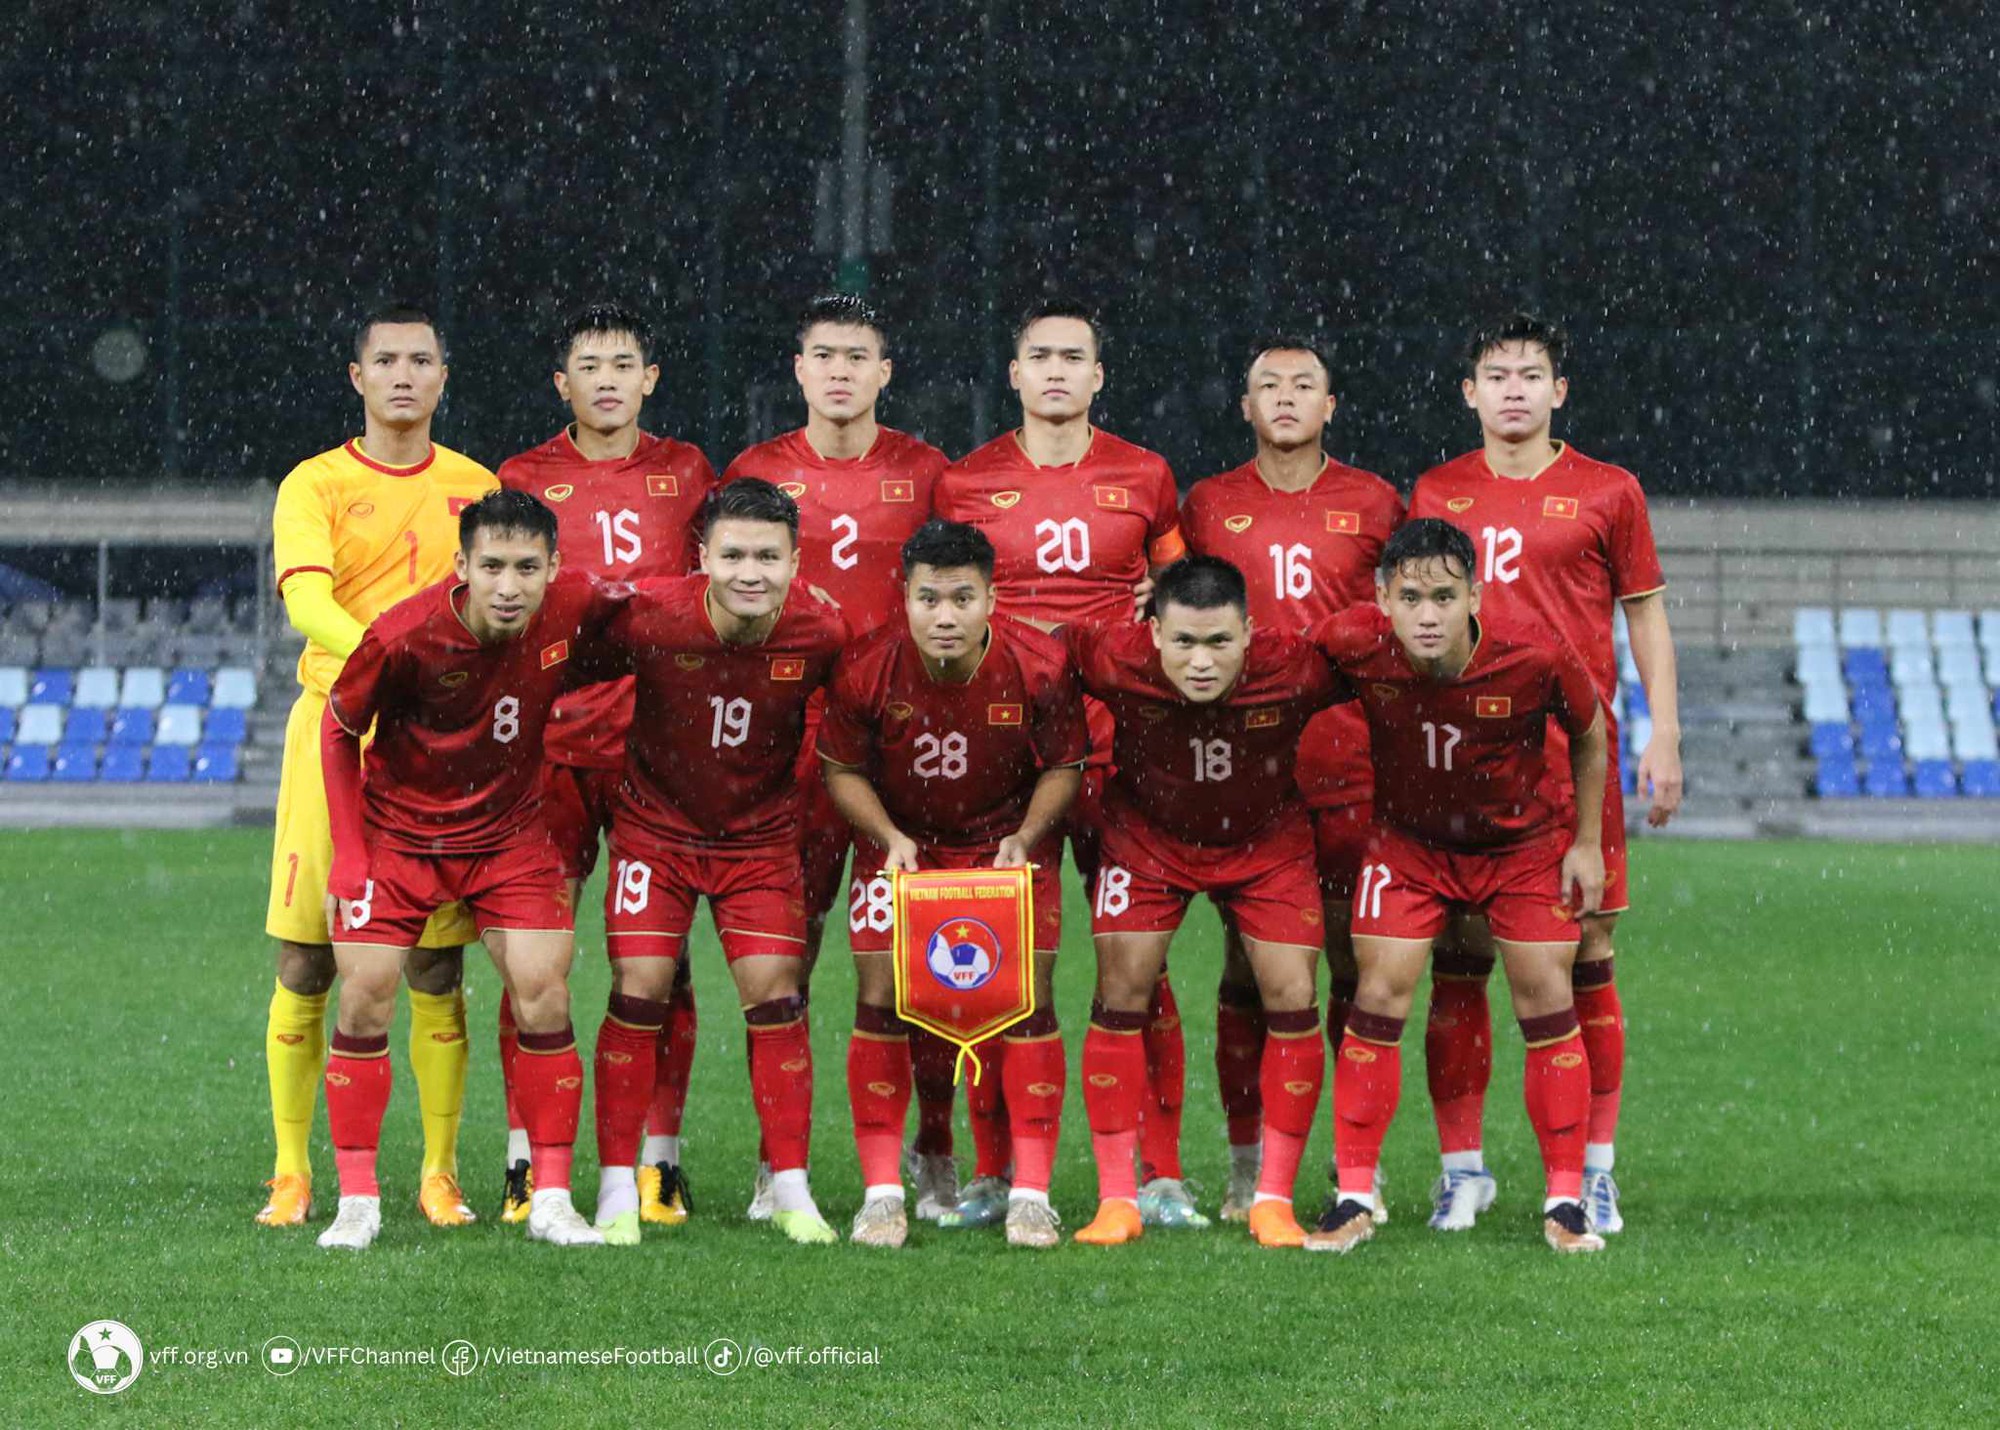 Thua Uzbekistan, đội tuyển Việt Nam nhận thêm tin không vui từ Quang Hải  - Ảnh 1.